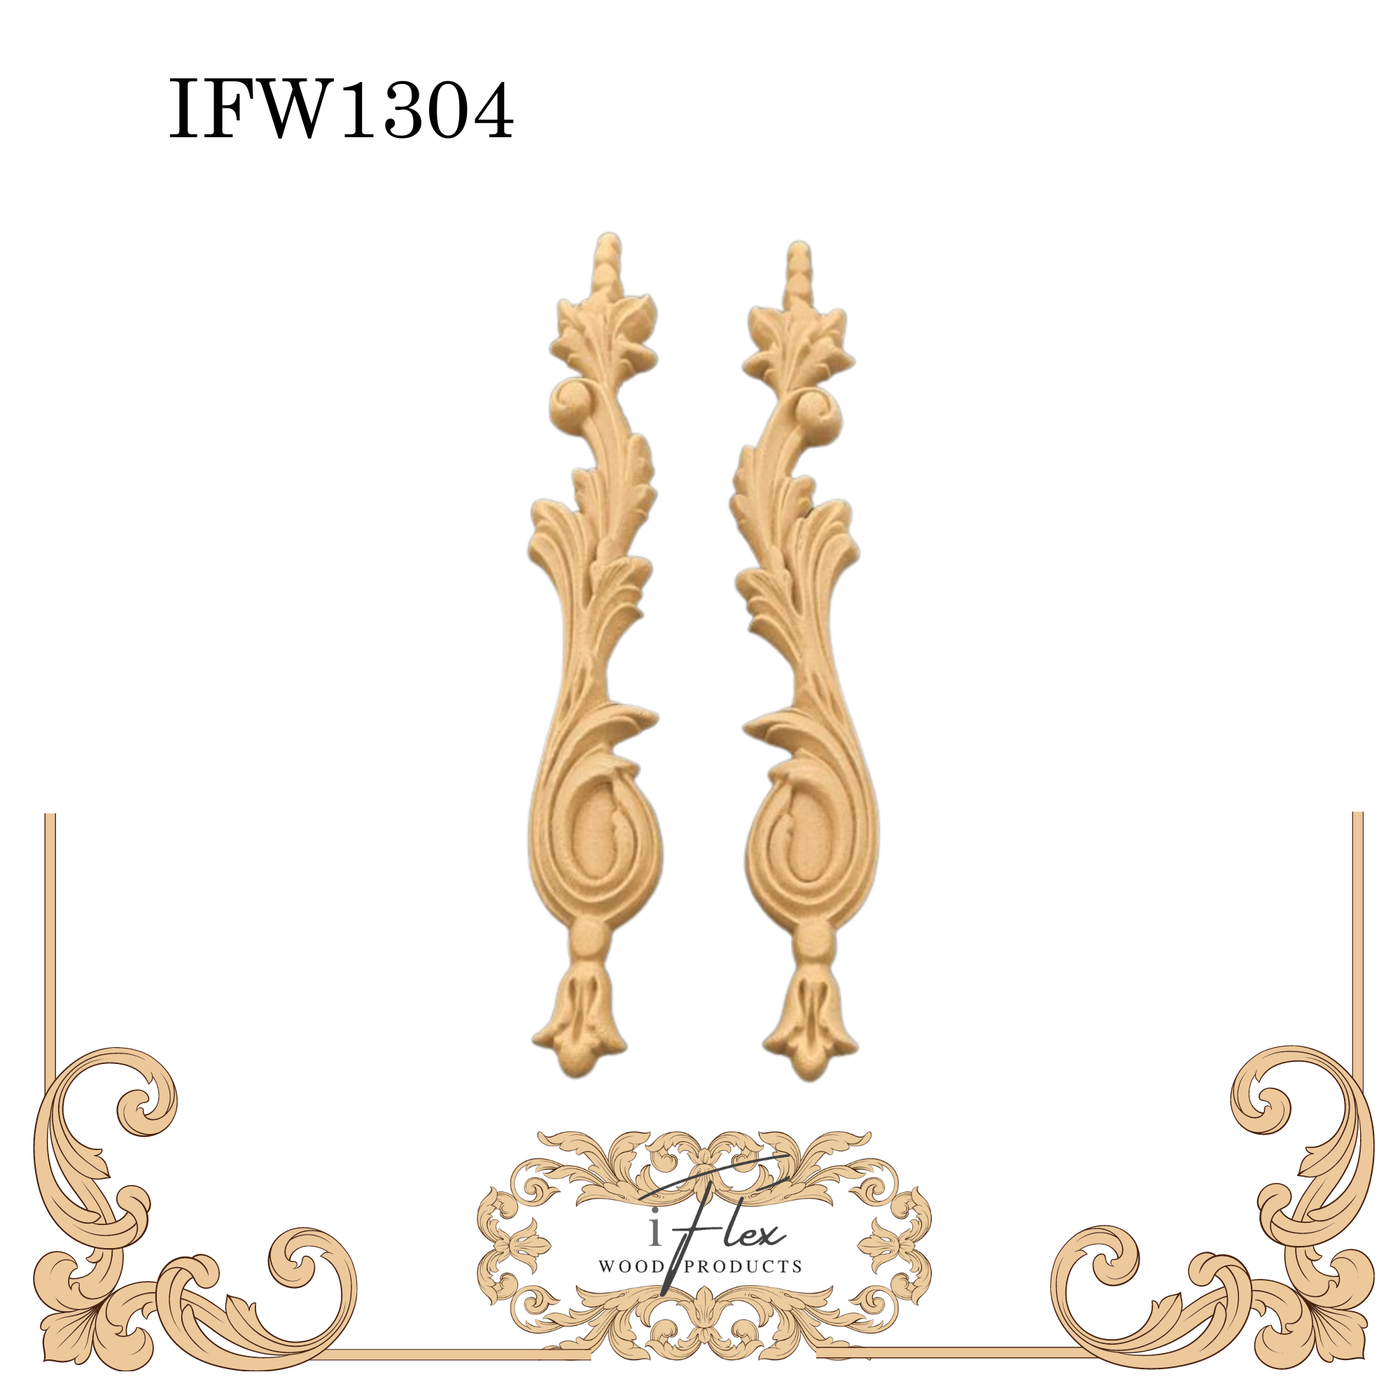 IFW 1304